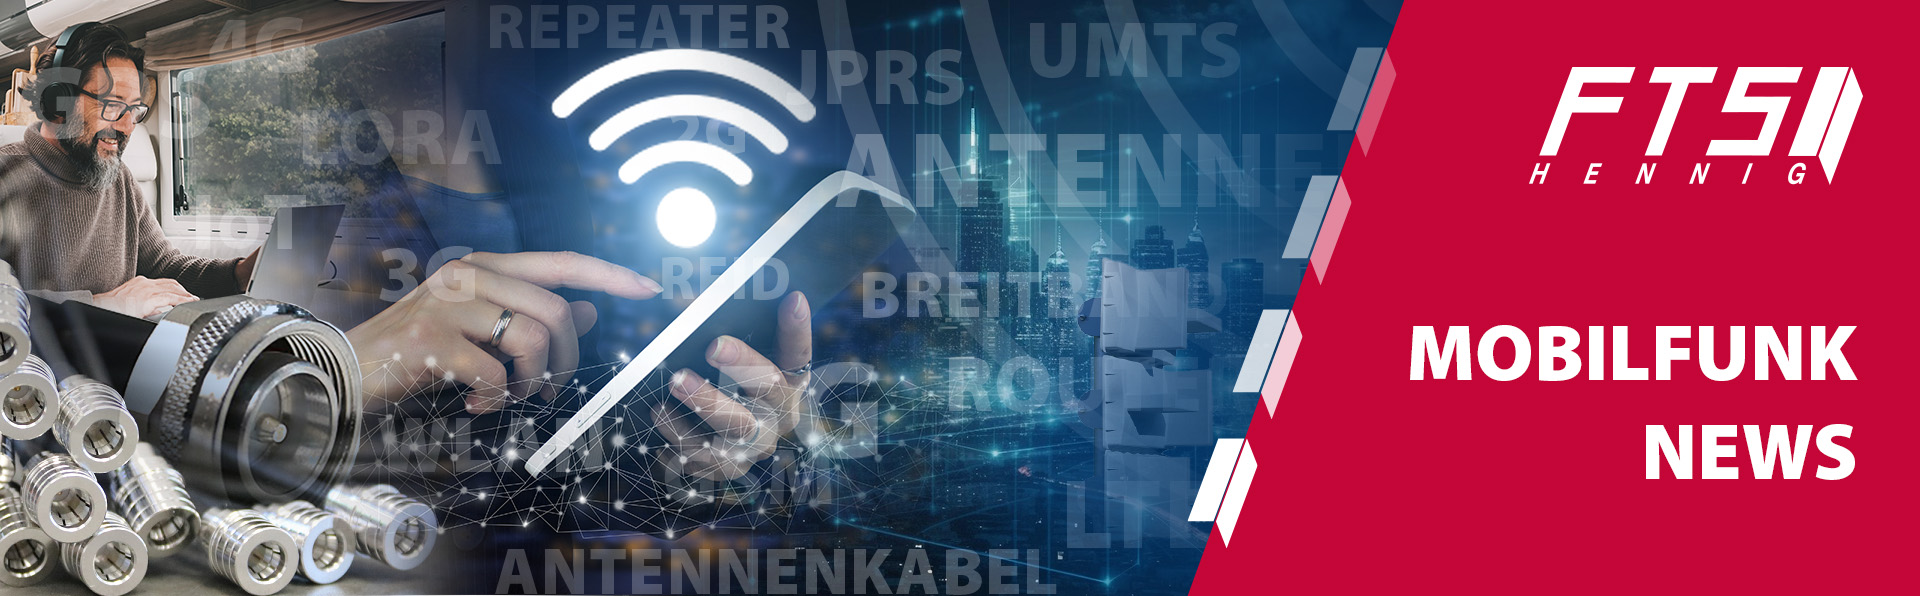 FTS Mobilfunk News: Infos zu Router, Antennen, Kabel und Zubehör für 4G und 5G